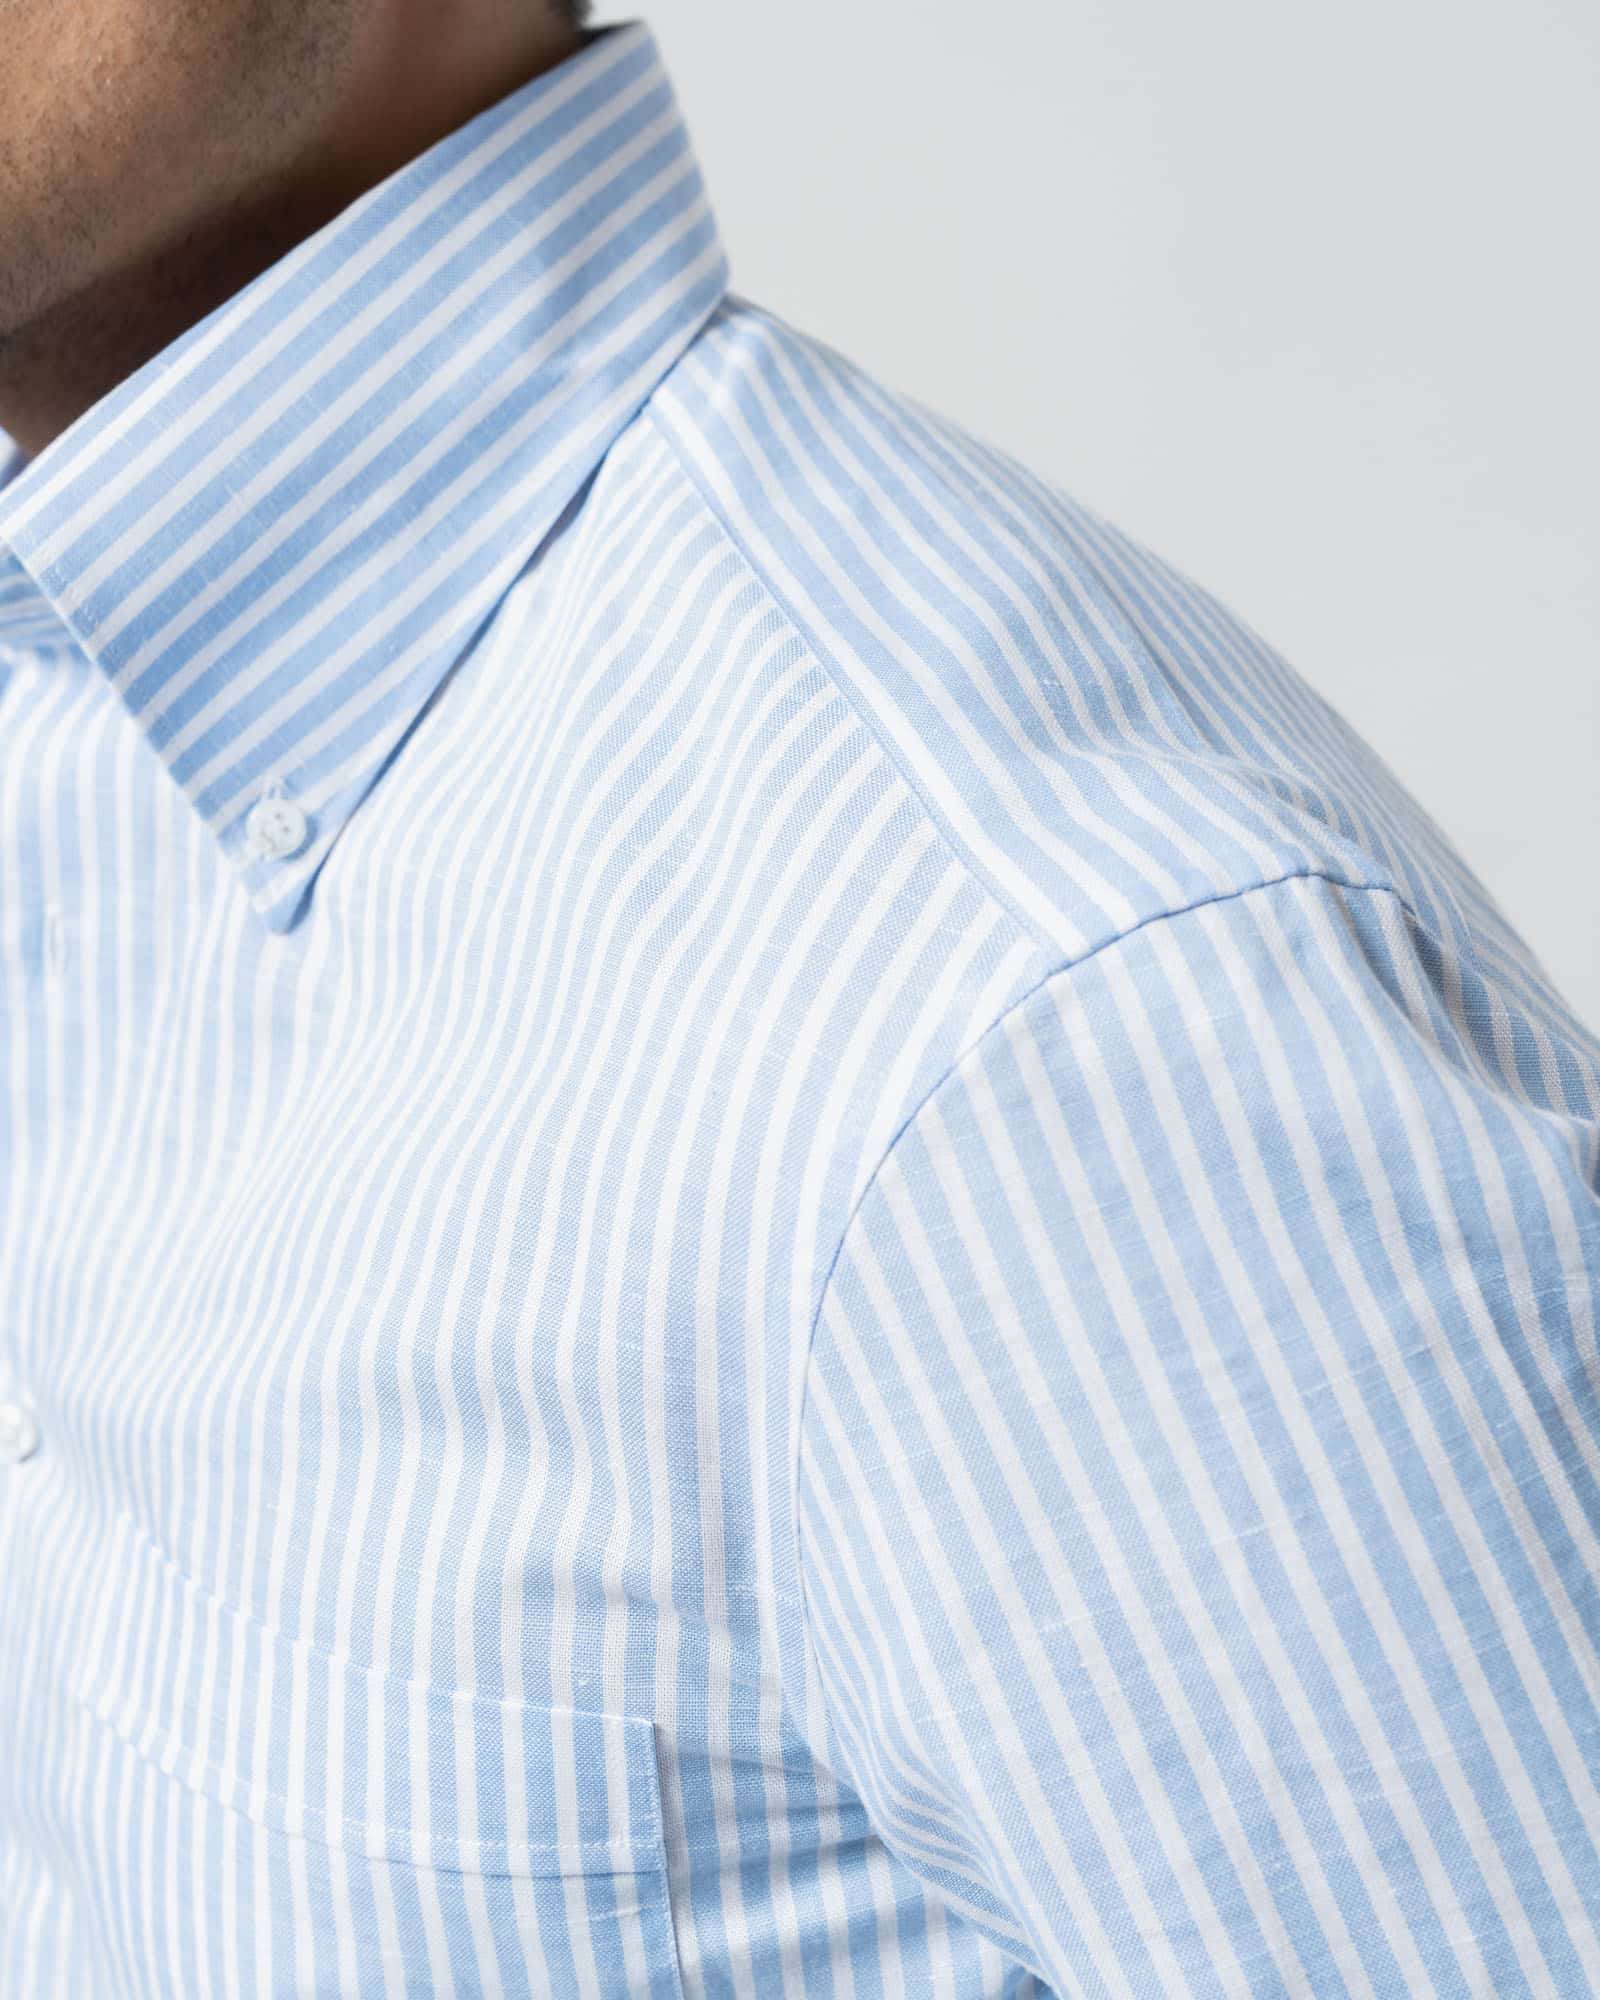 Shirt linen striped light blue image 6